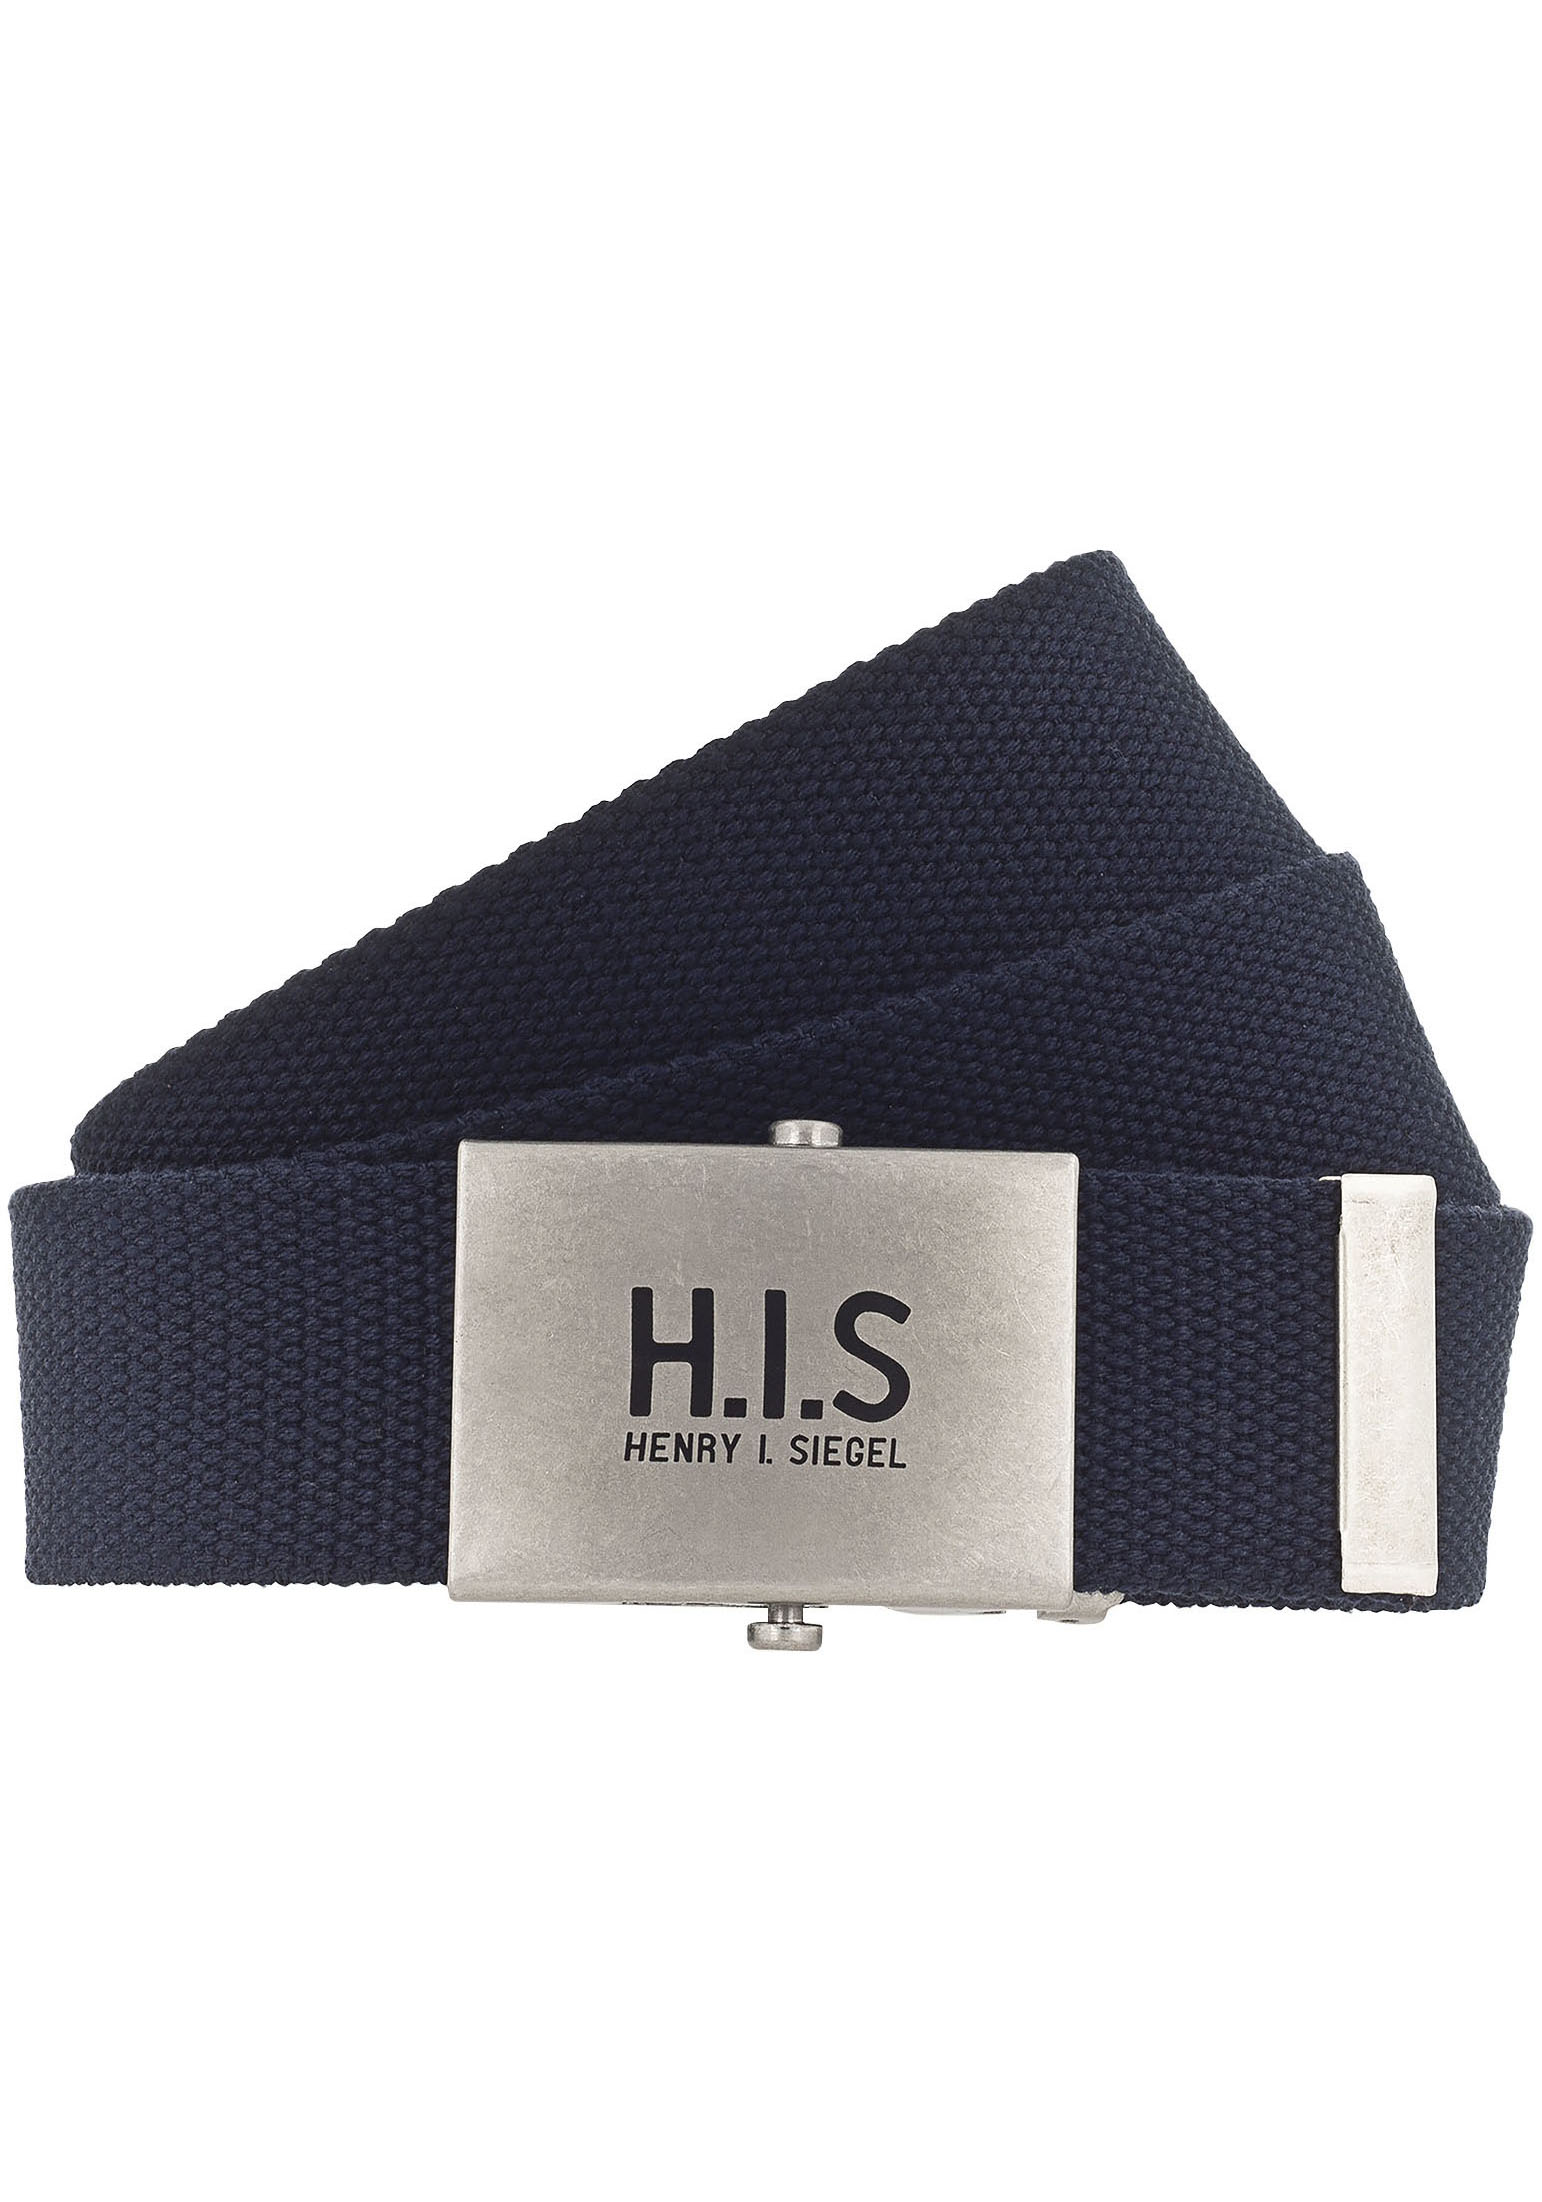 H.I.S Stoffgürtel, Bandgürtel mit kaufen auf H.I.S Koppelschließe der Logo online